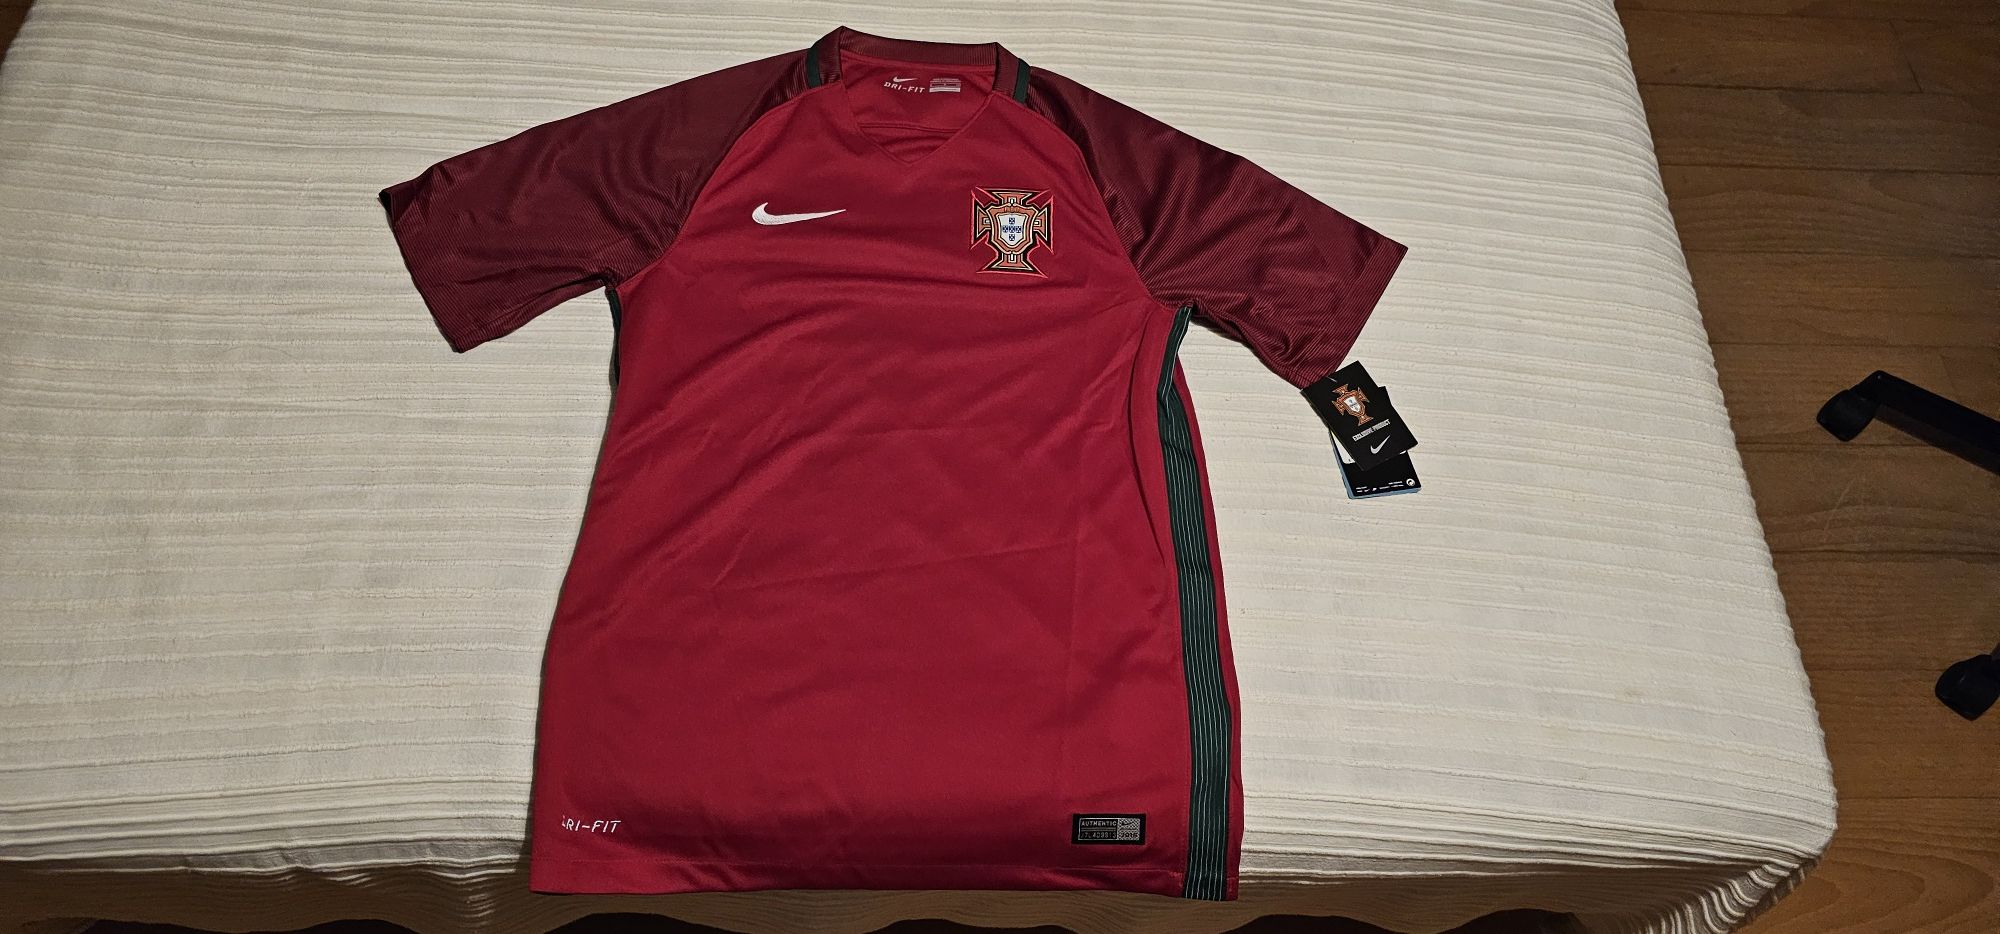 Camisola/tshirt seleção portugal